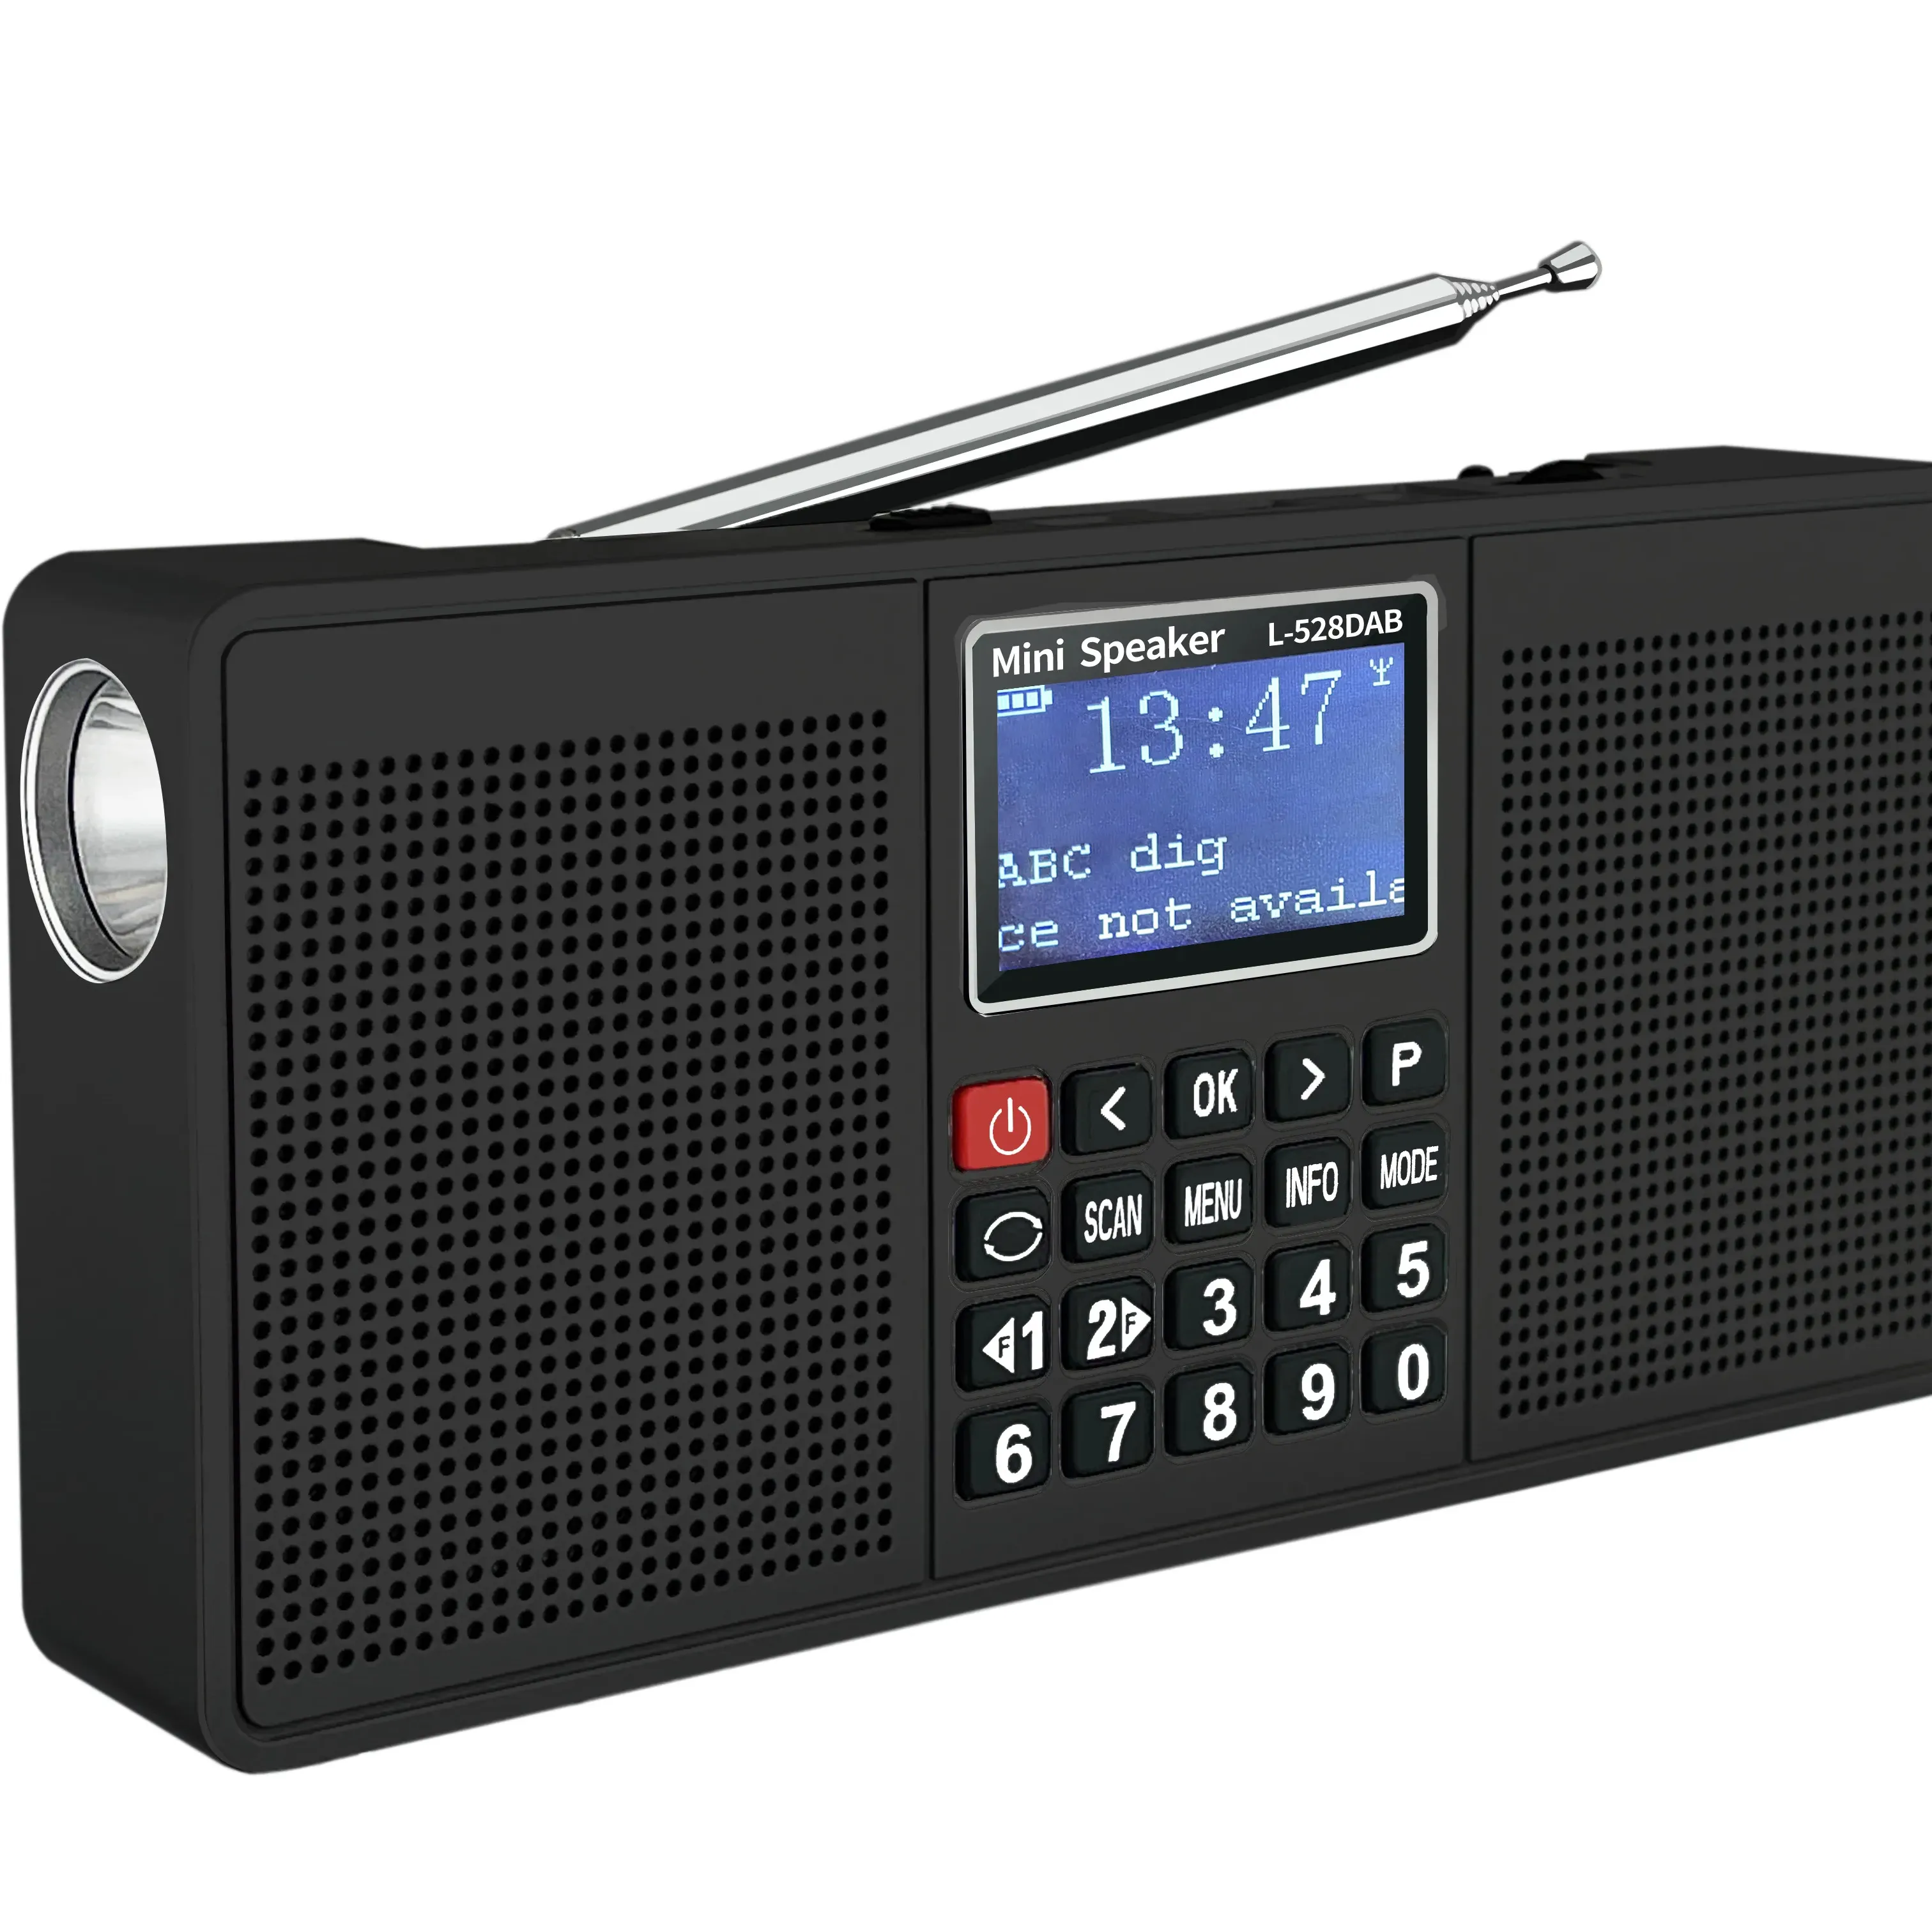 L-528DAB Fone de ouvido com rádio DAB digital estéreo multifuncional com Bluetooth TF USB FM/DAB/DAB + Lanterna Relógio recarregável